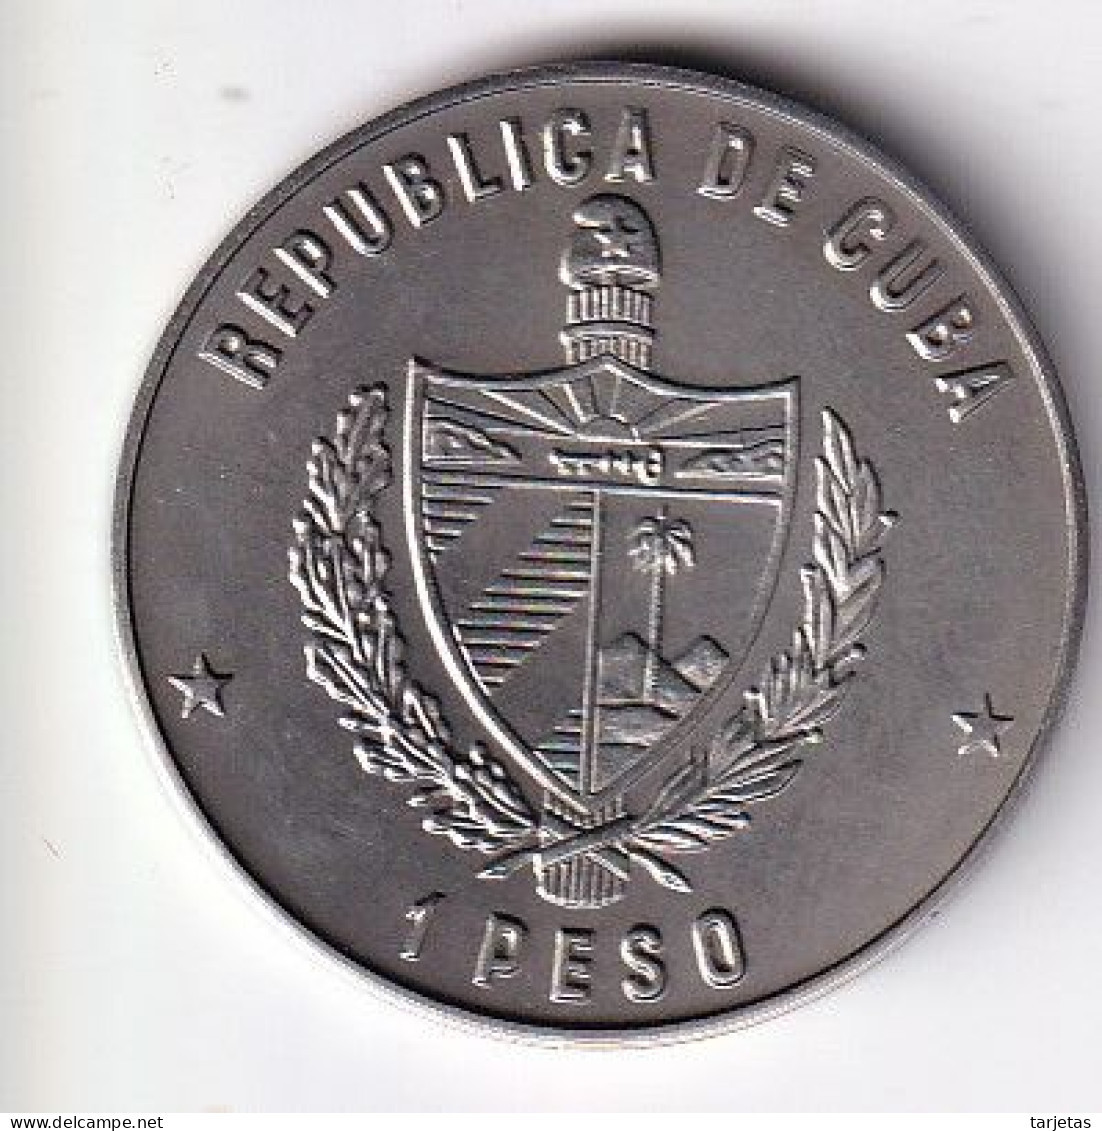 MONEDA DE CUBA DE 1 PESO DEL AÑO 1979 CUMBRE DE LA HABANA (COIN)  (NUEVA - UNC) - Kuba